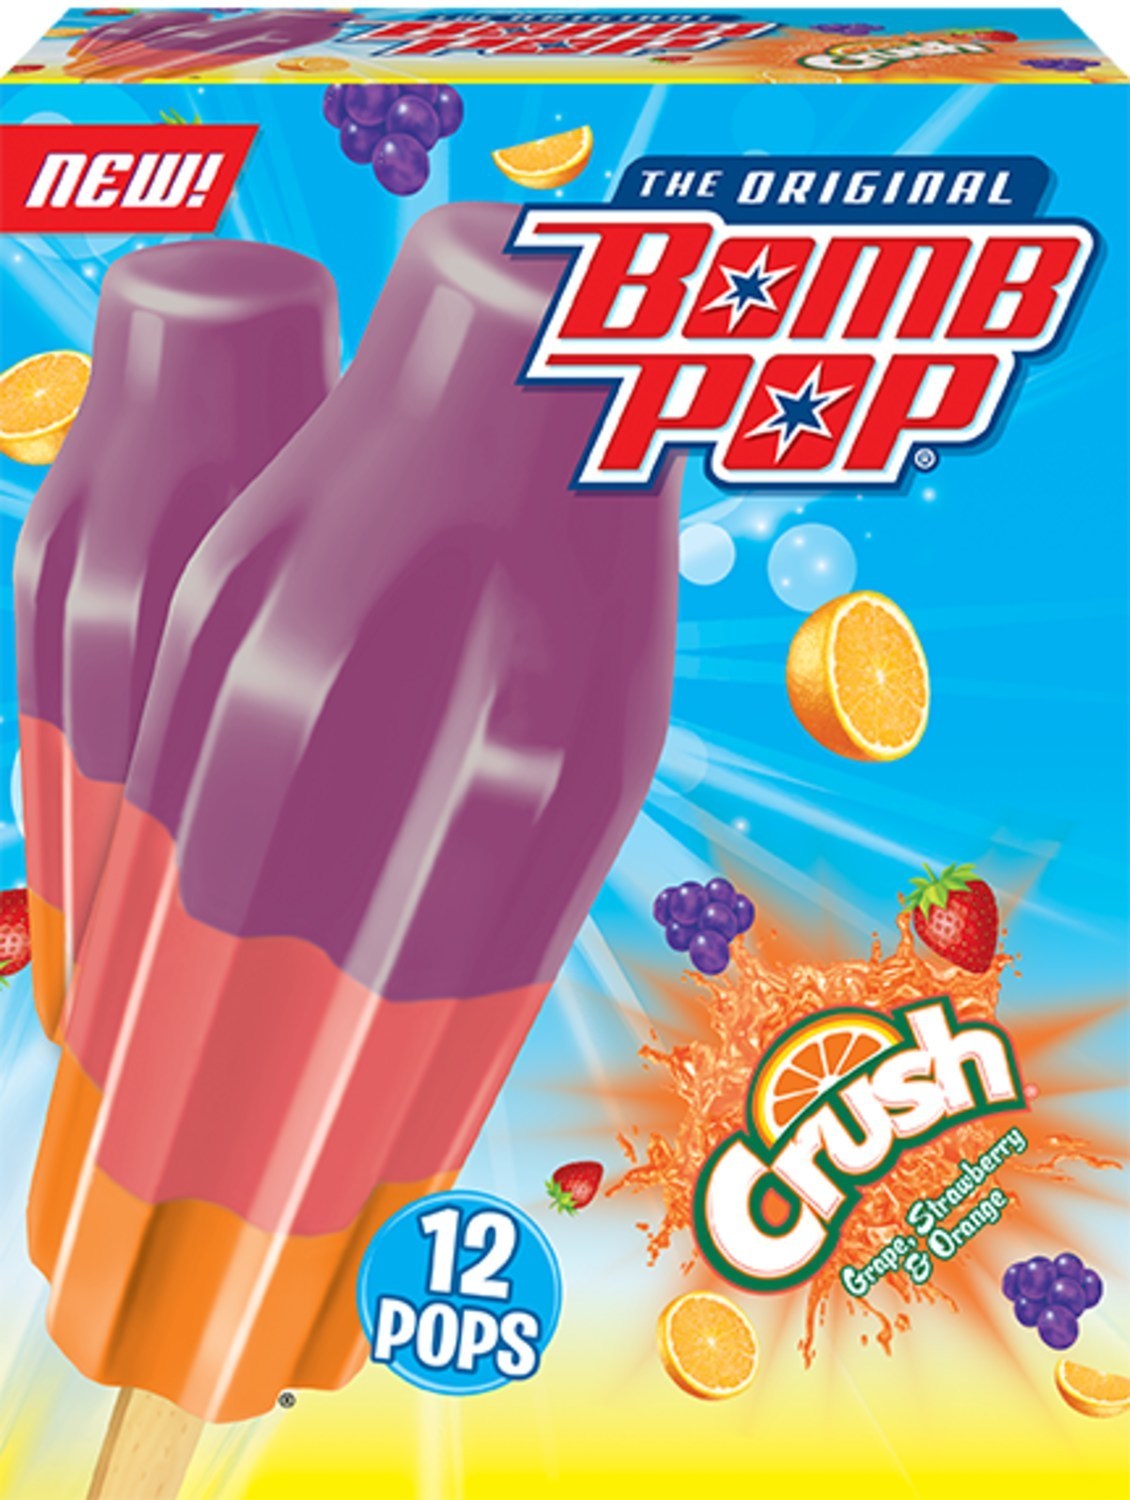 Bomb pop